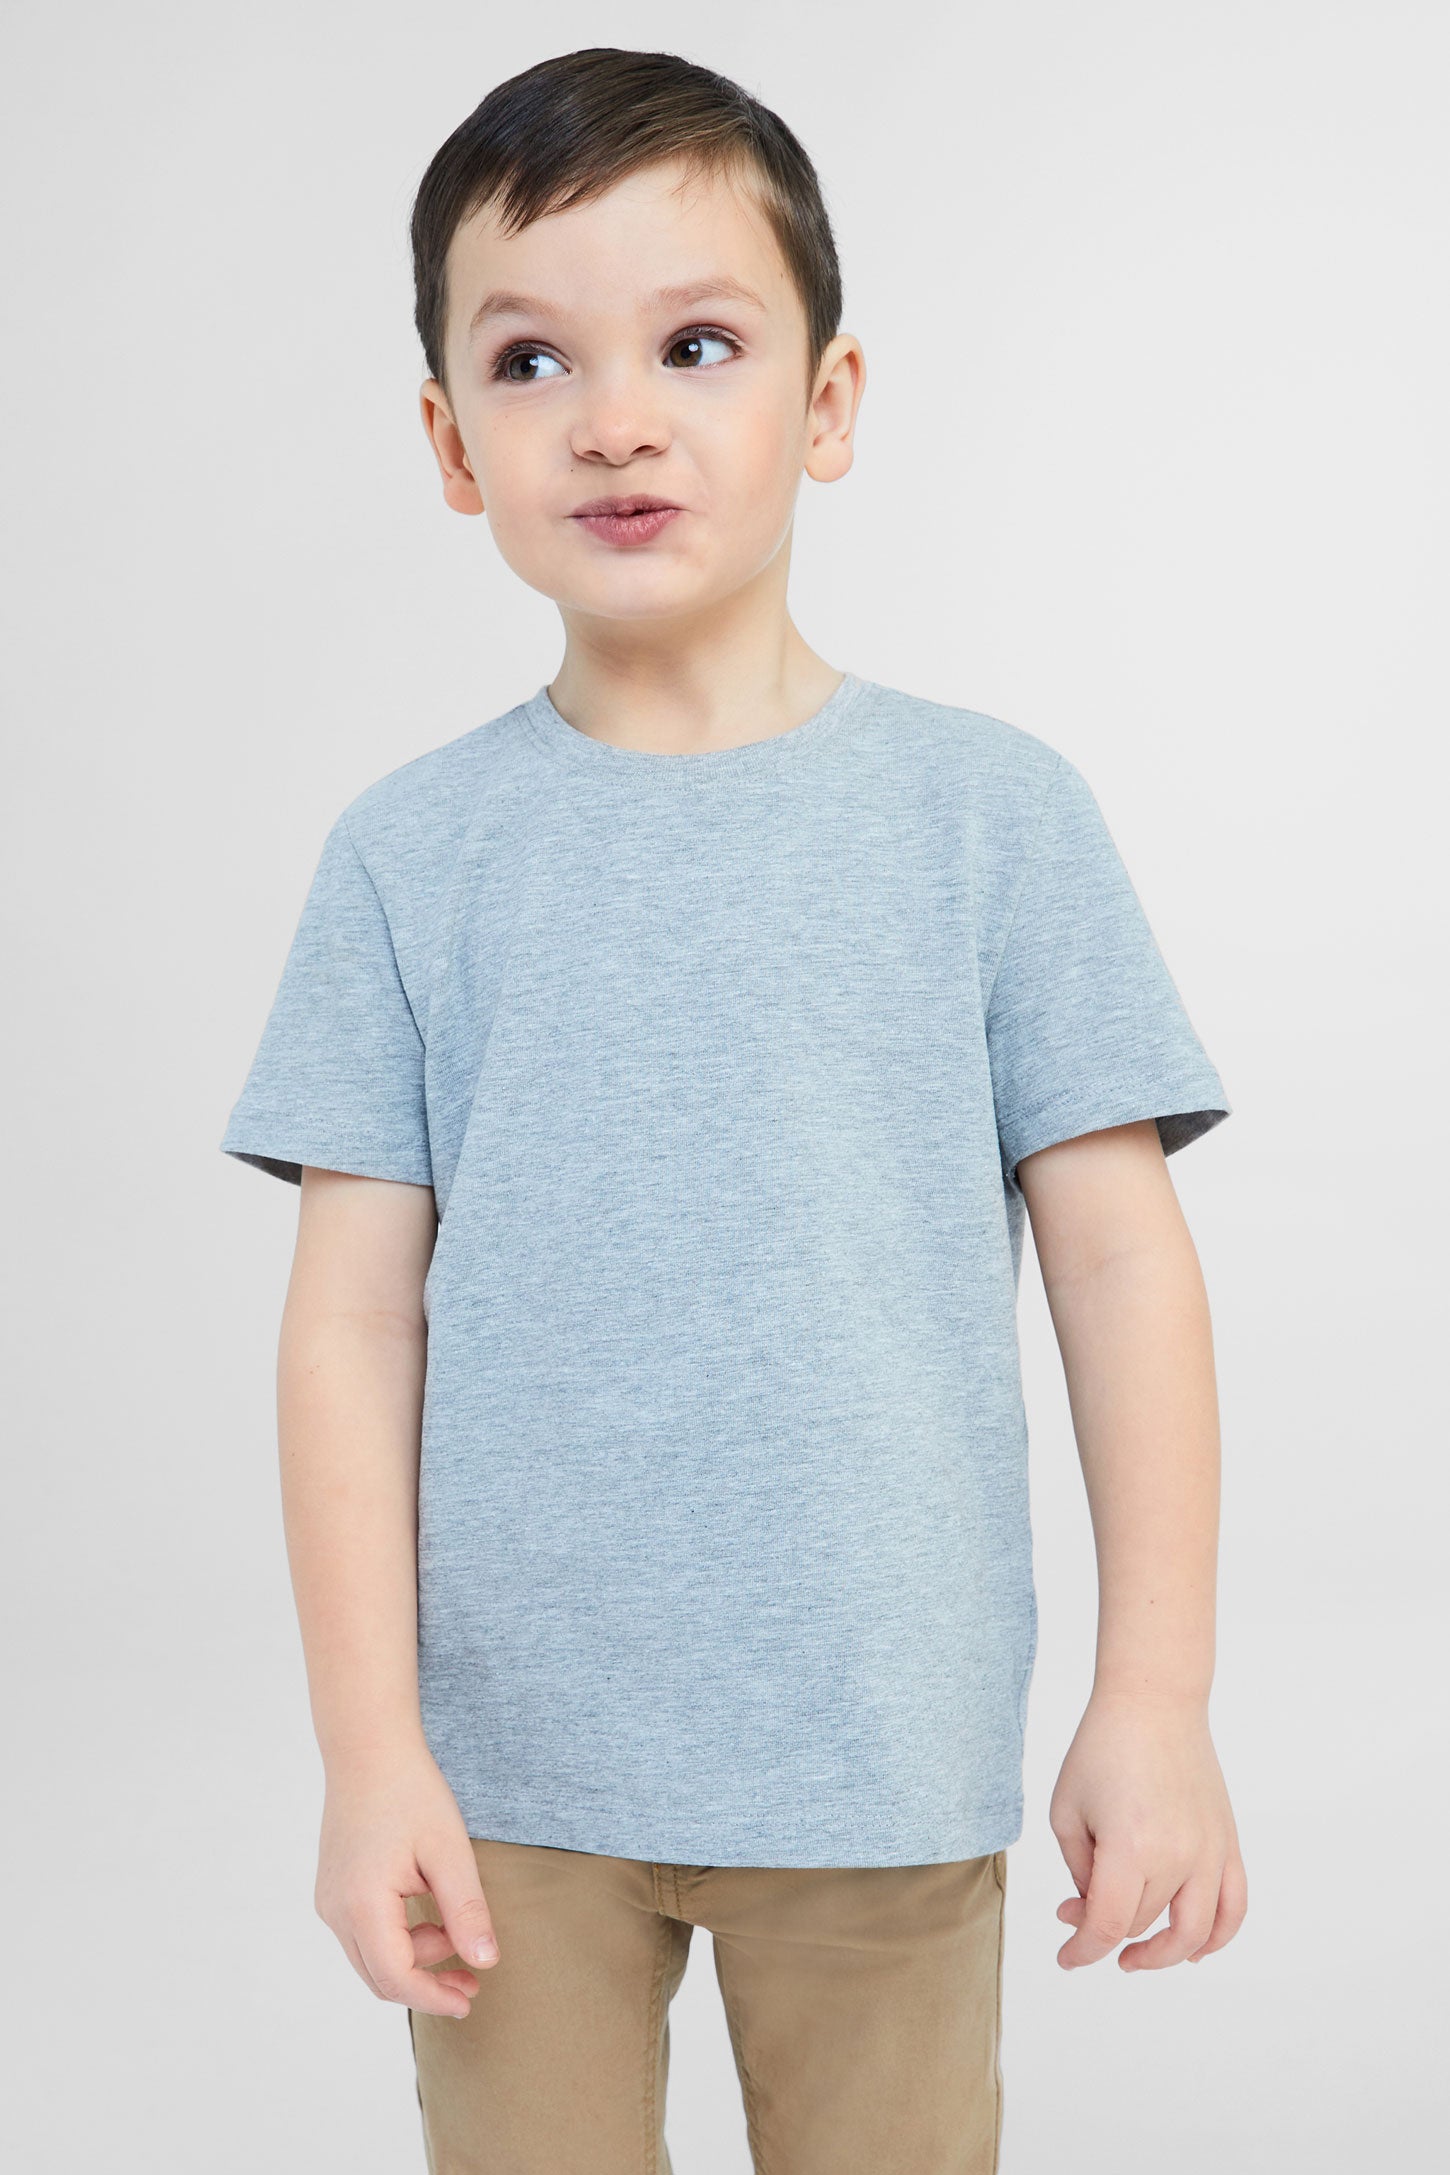 T-shirt essentiel, 2/20$ - Enfant garçon && GRIS MIXTE